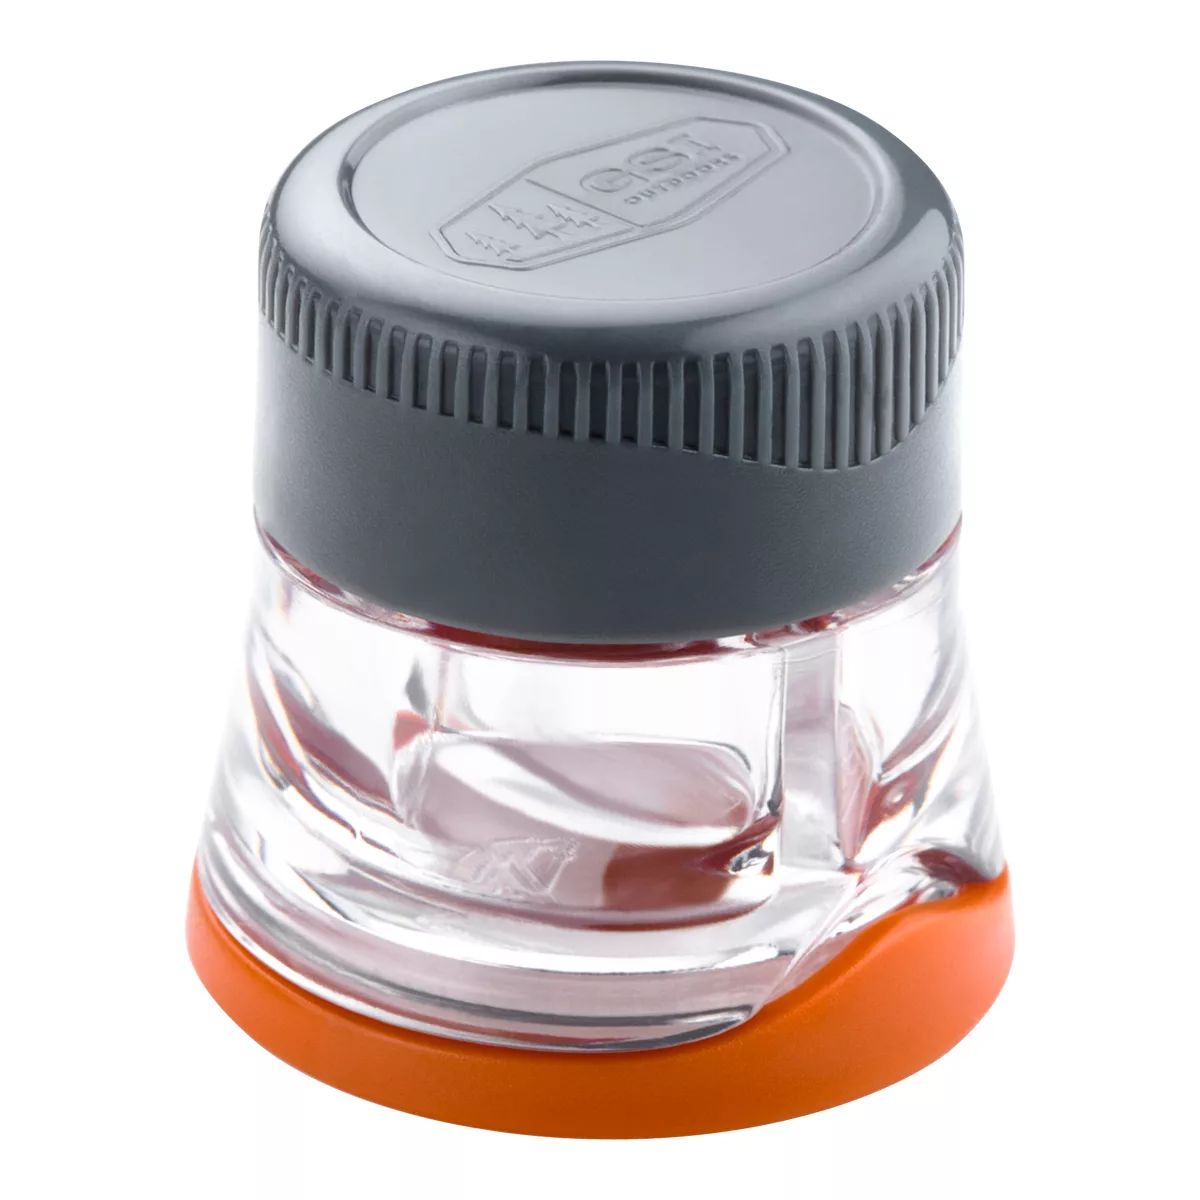 Image of GSI Ultralight Salt and Pepper Shaker